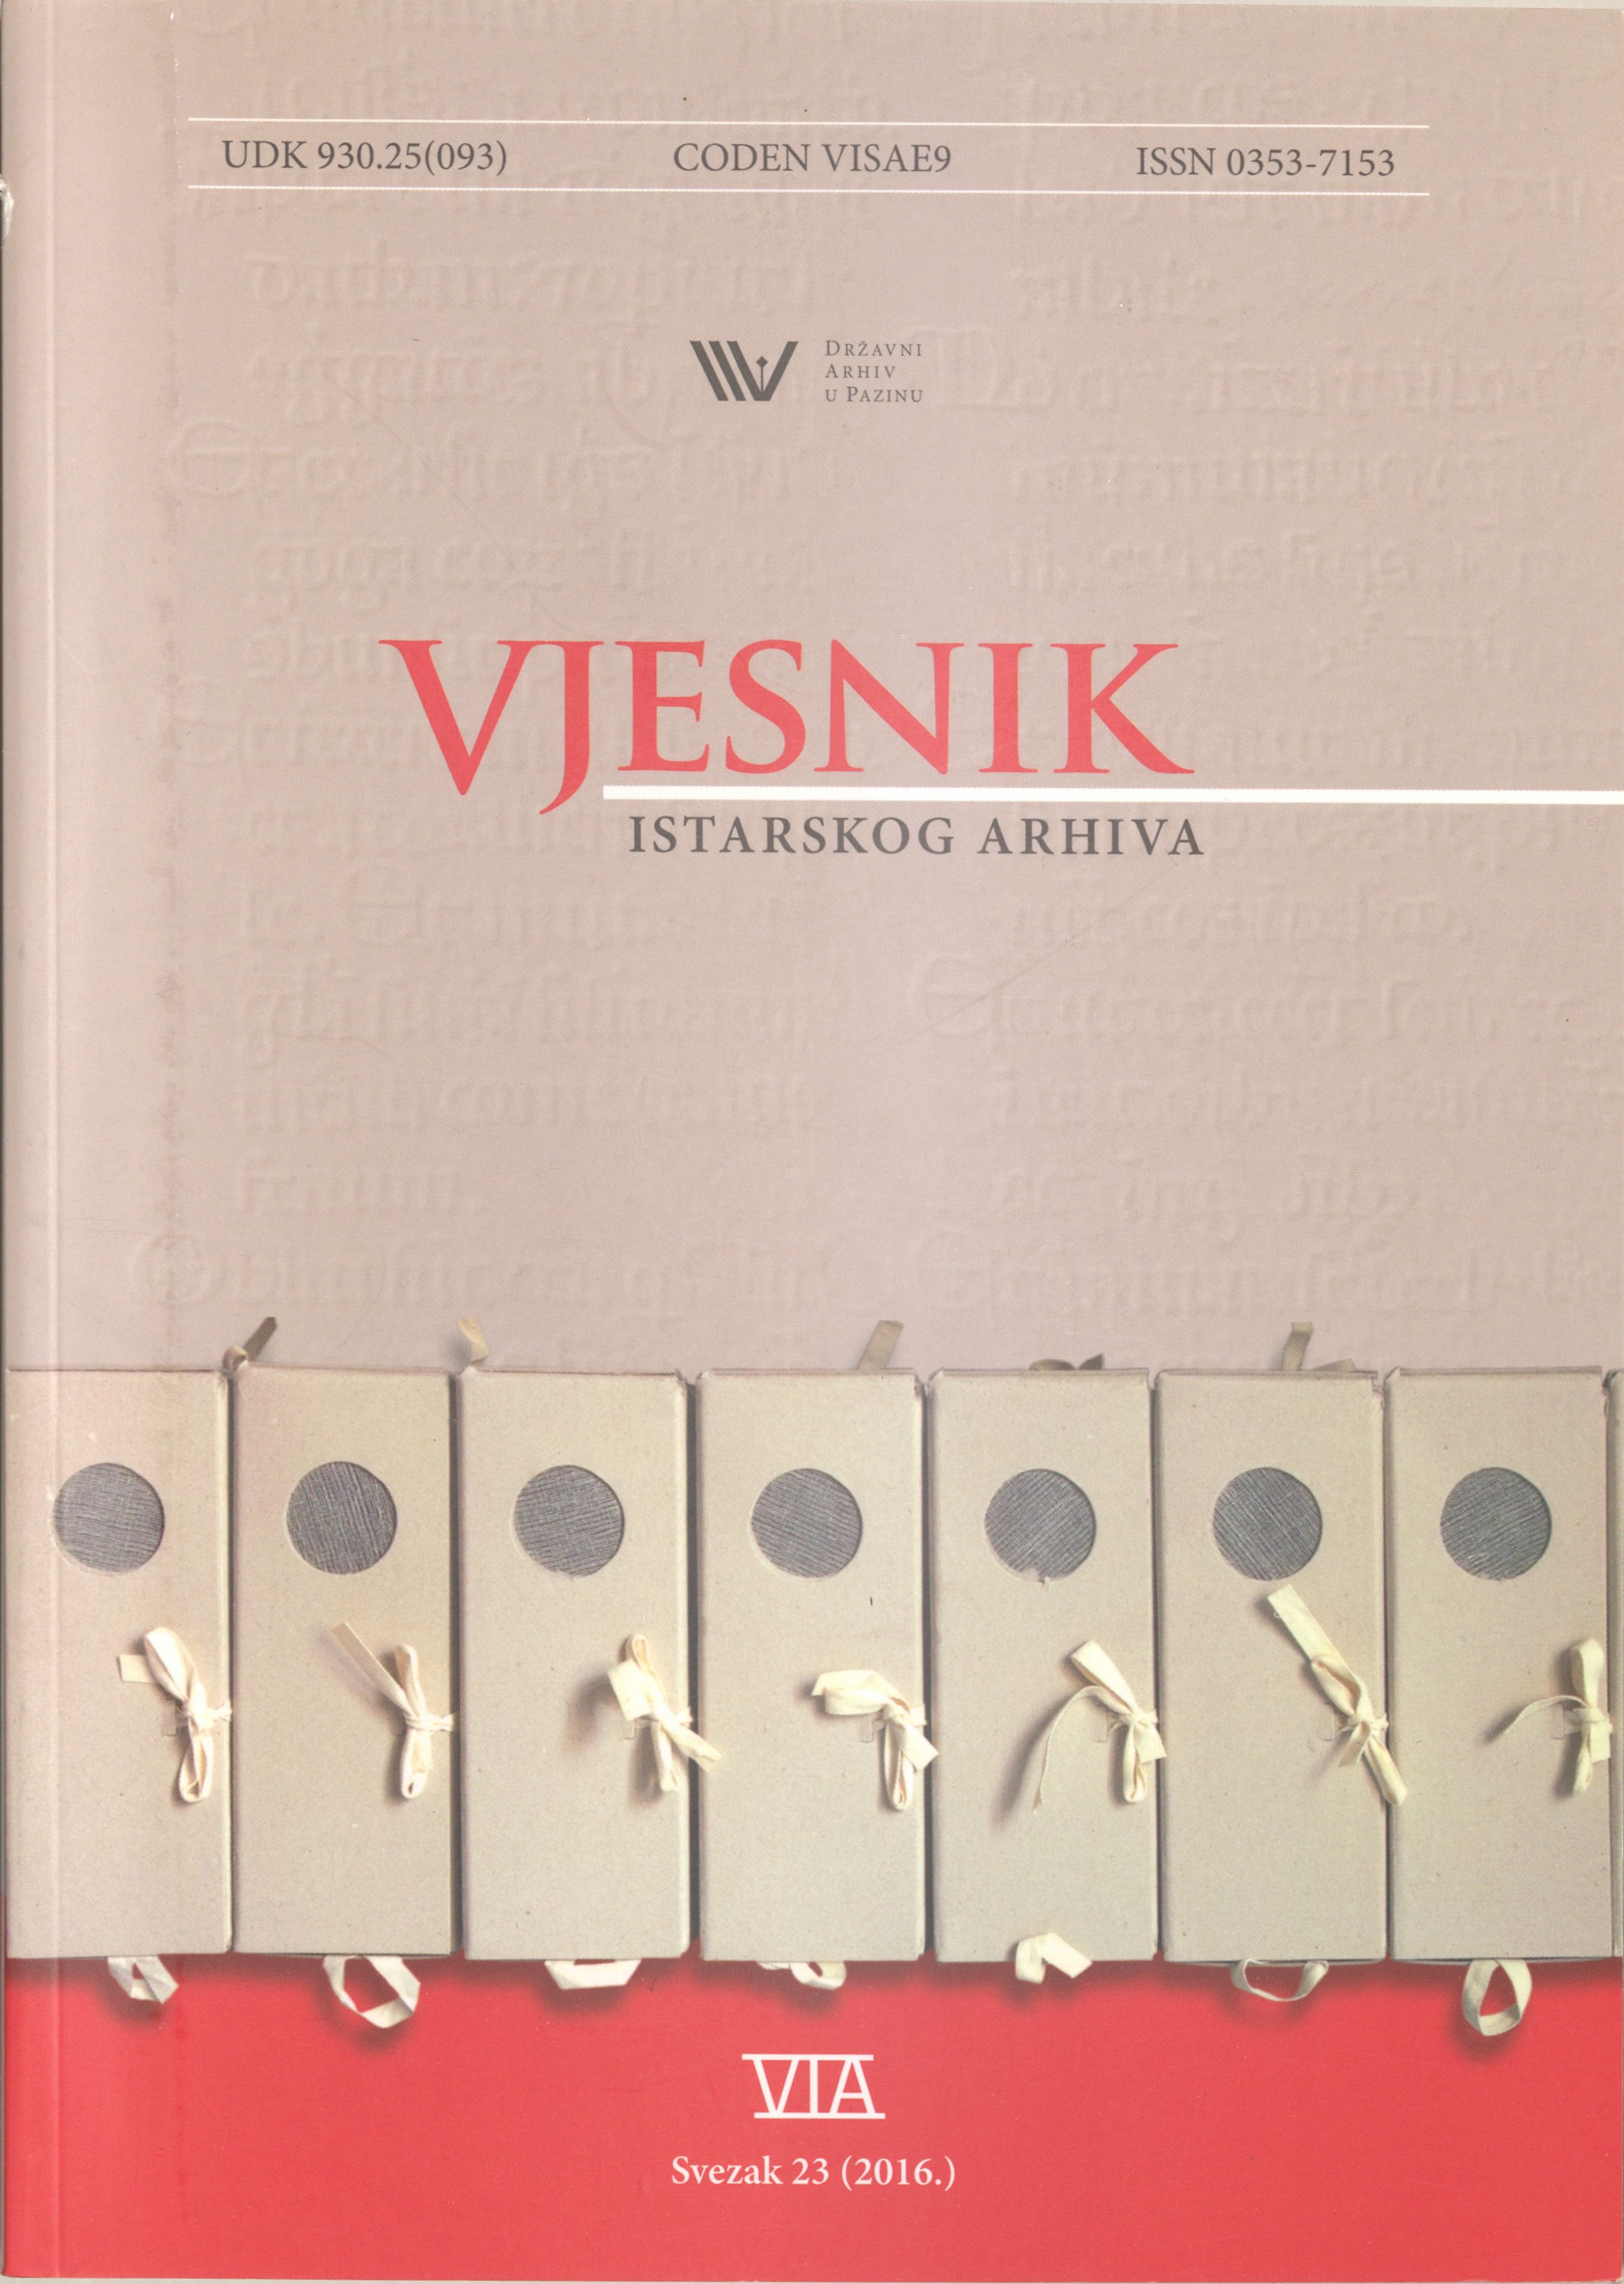 					Pogledaj Vjesnik istarskog arhiva sv. 23 (2016.)
				